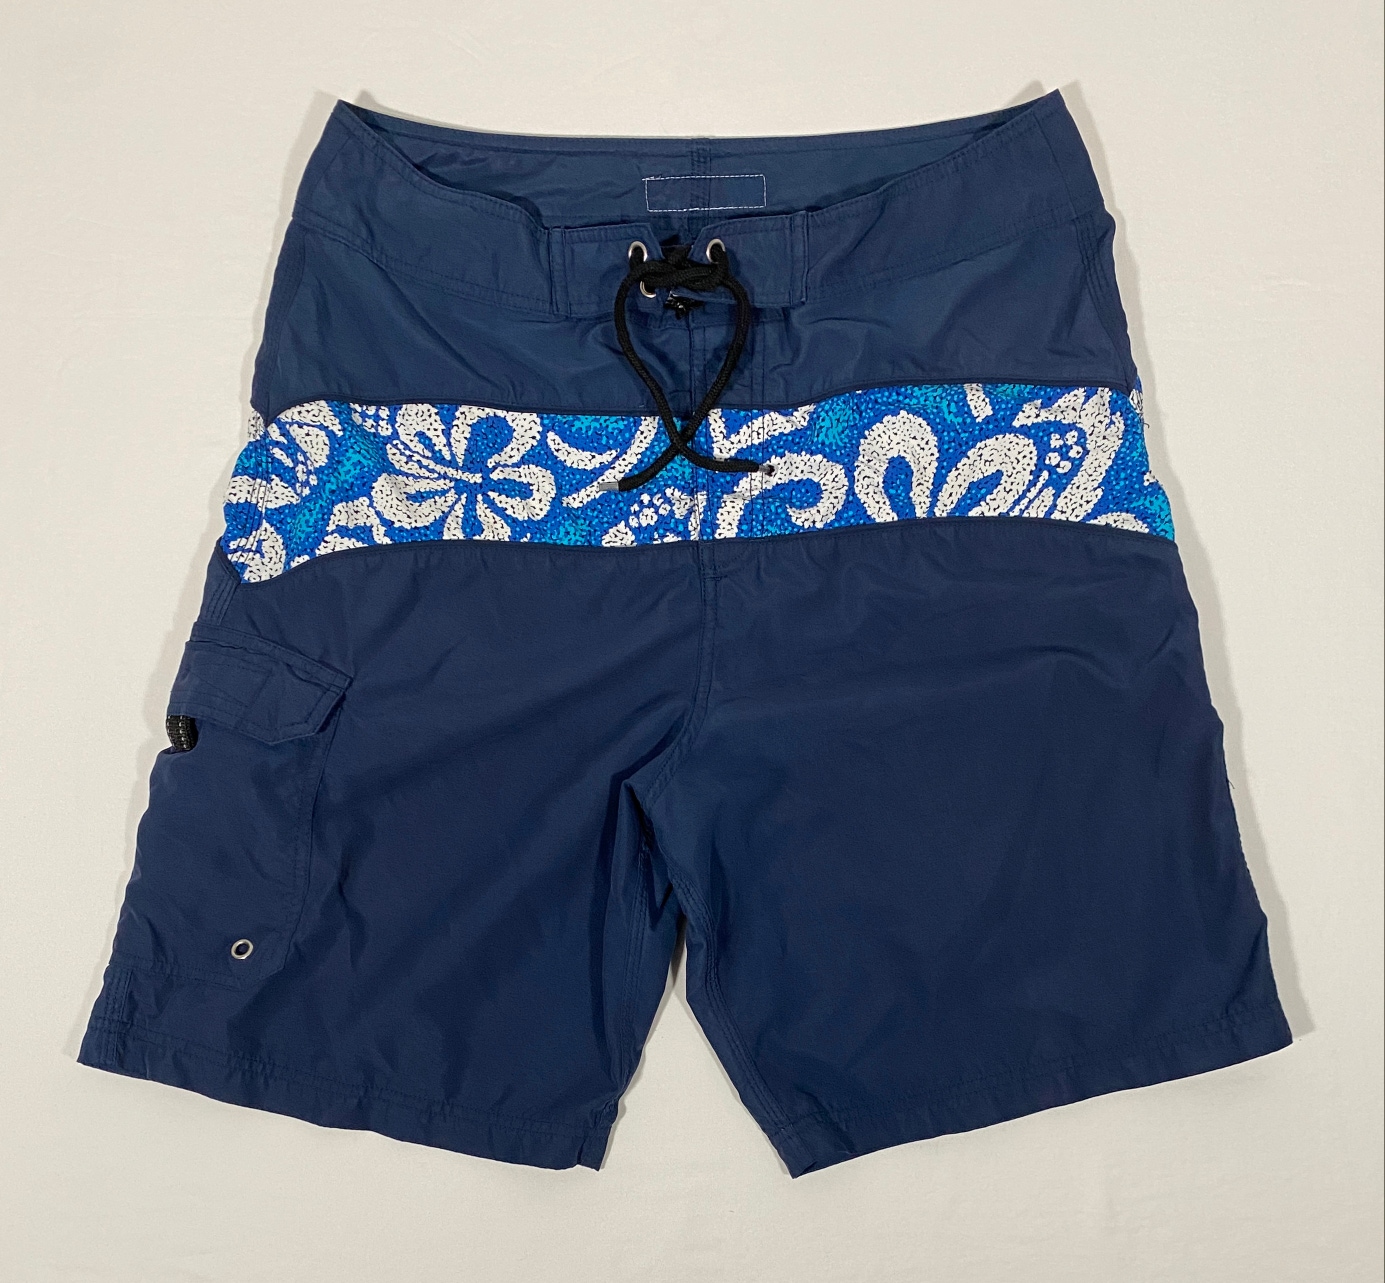 Vintage Sideout Beachwear Men's Size 32 Blue Floral Board Shorts/Swim Trunks